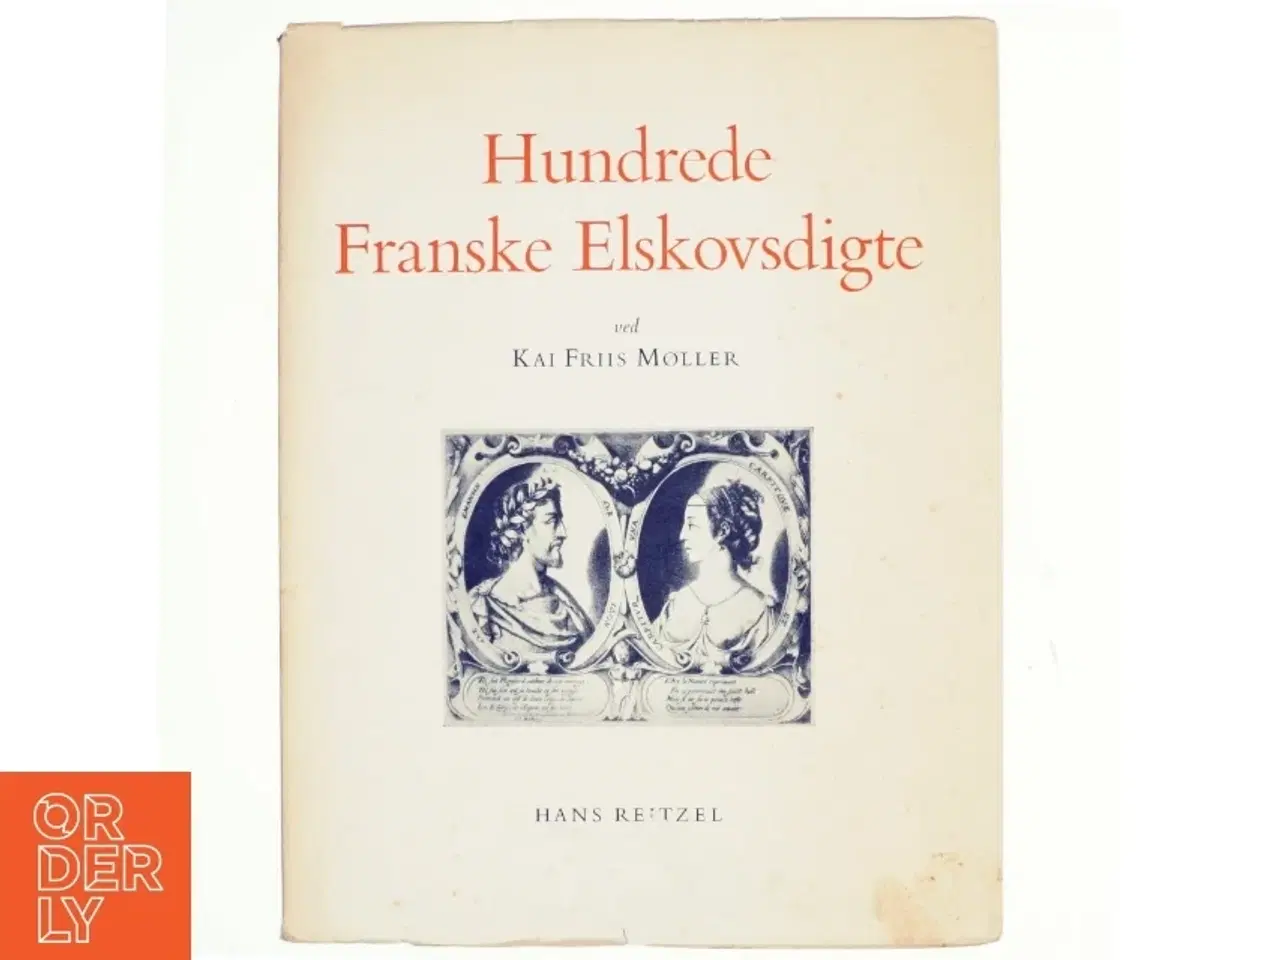 Billede 1 - Hundrede franske elskovsdigte ved Kai Friis Møller (bog)